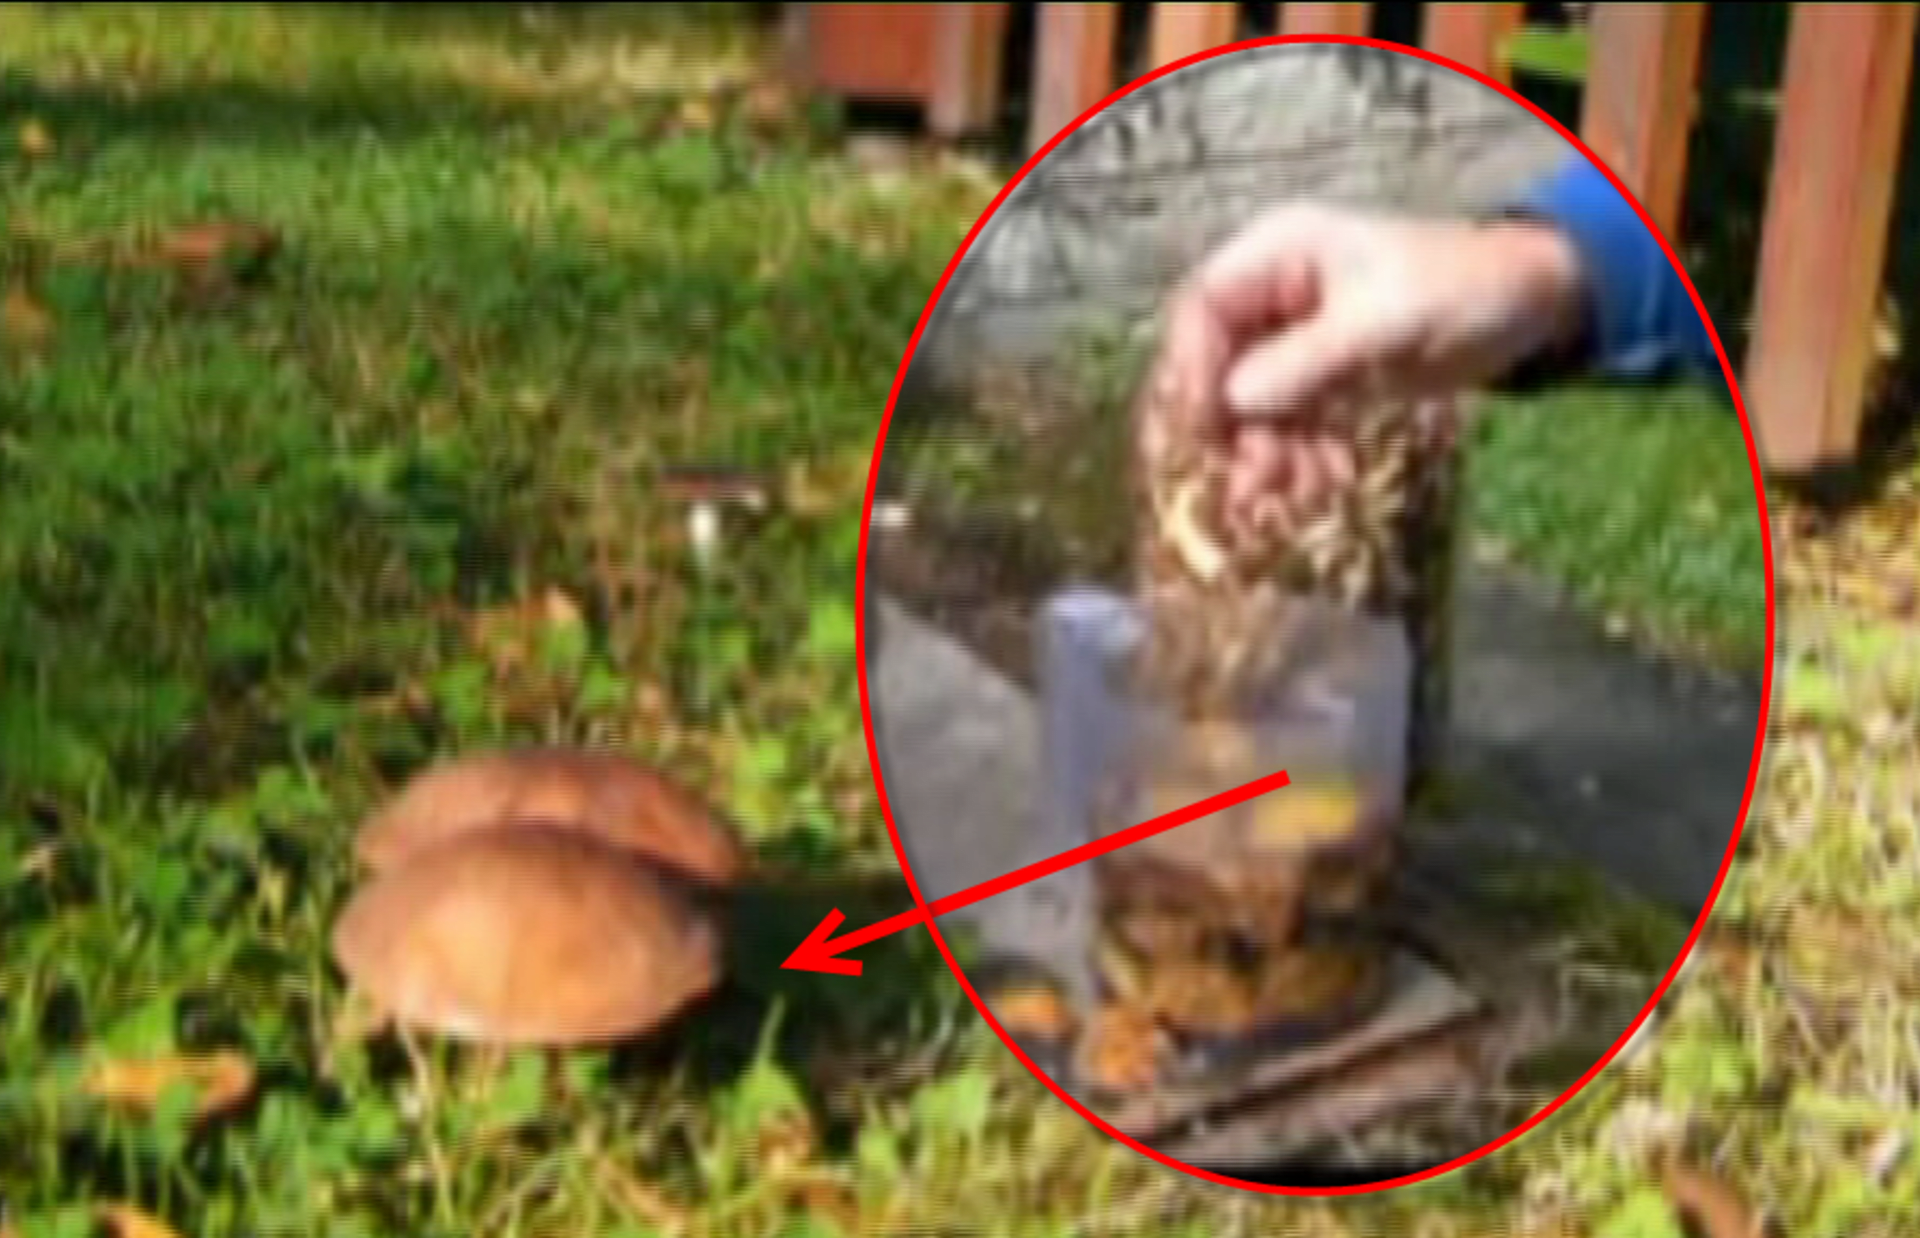 video Divácké zprávy: Tak tenhle návod na pěstování hub snad ani radši nezkoušejte...